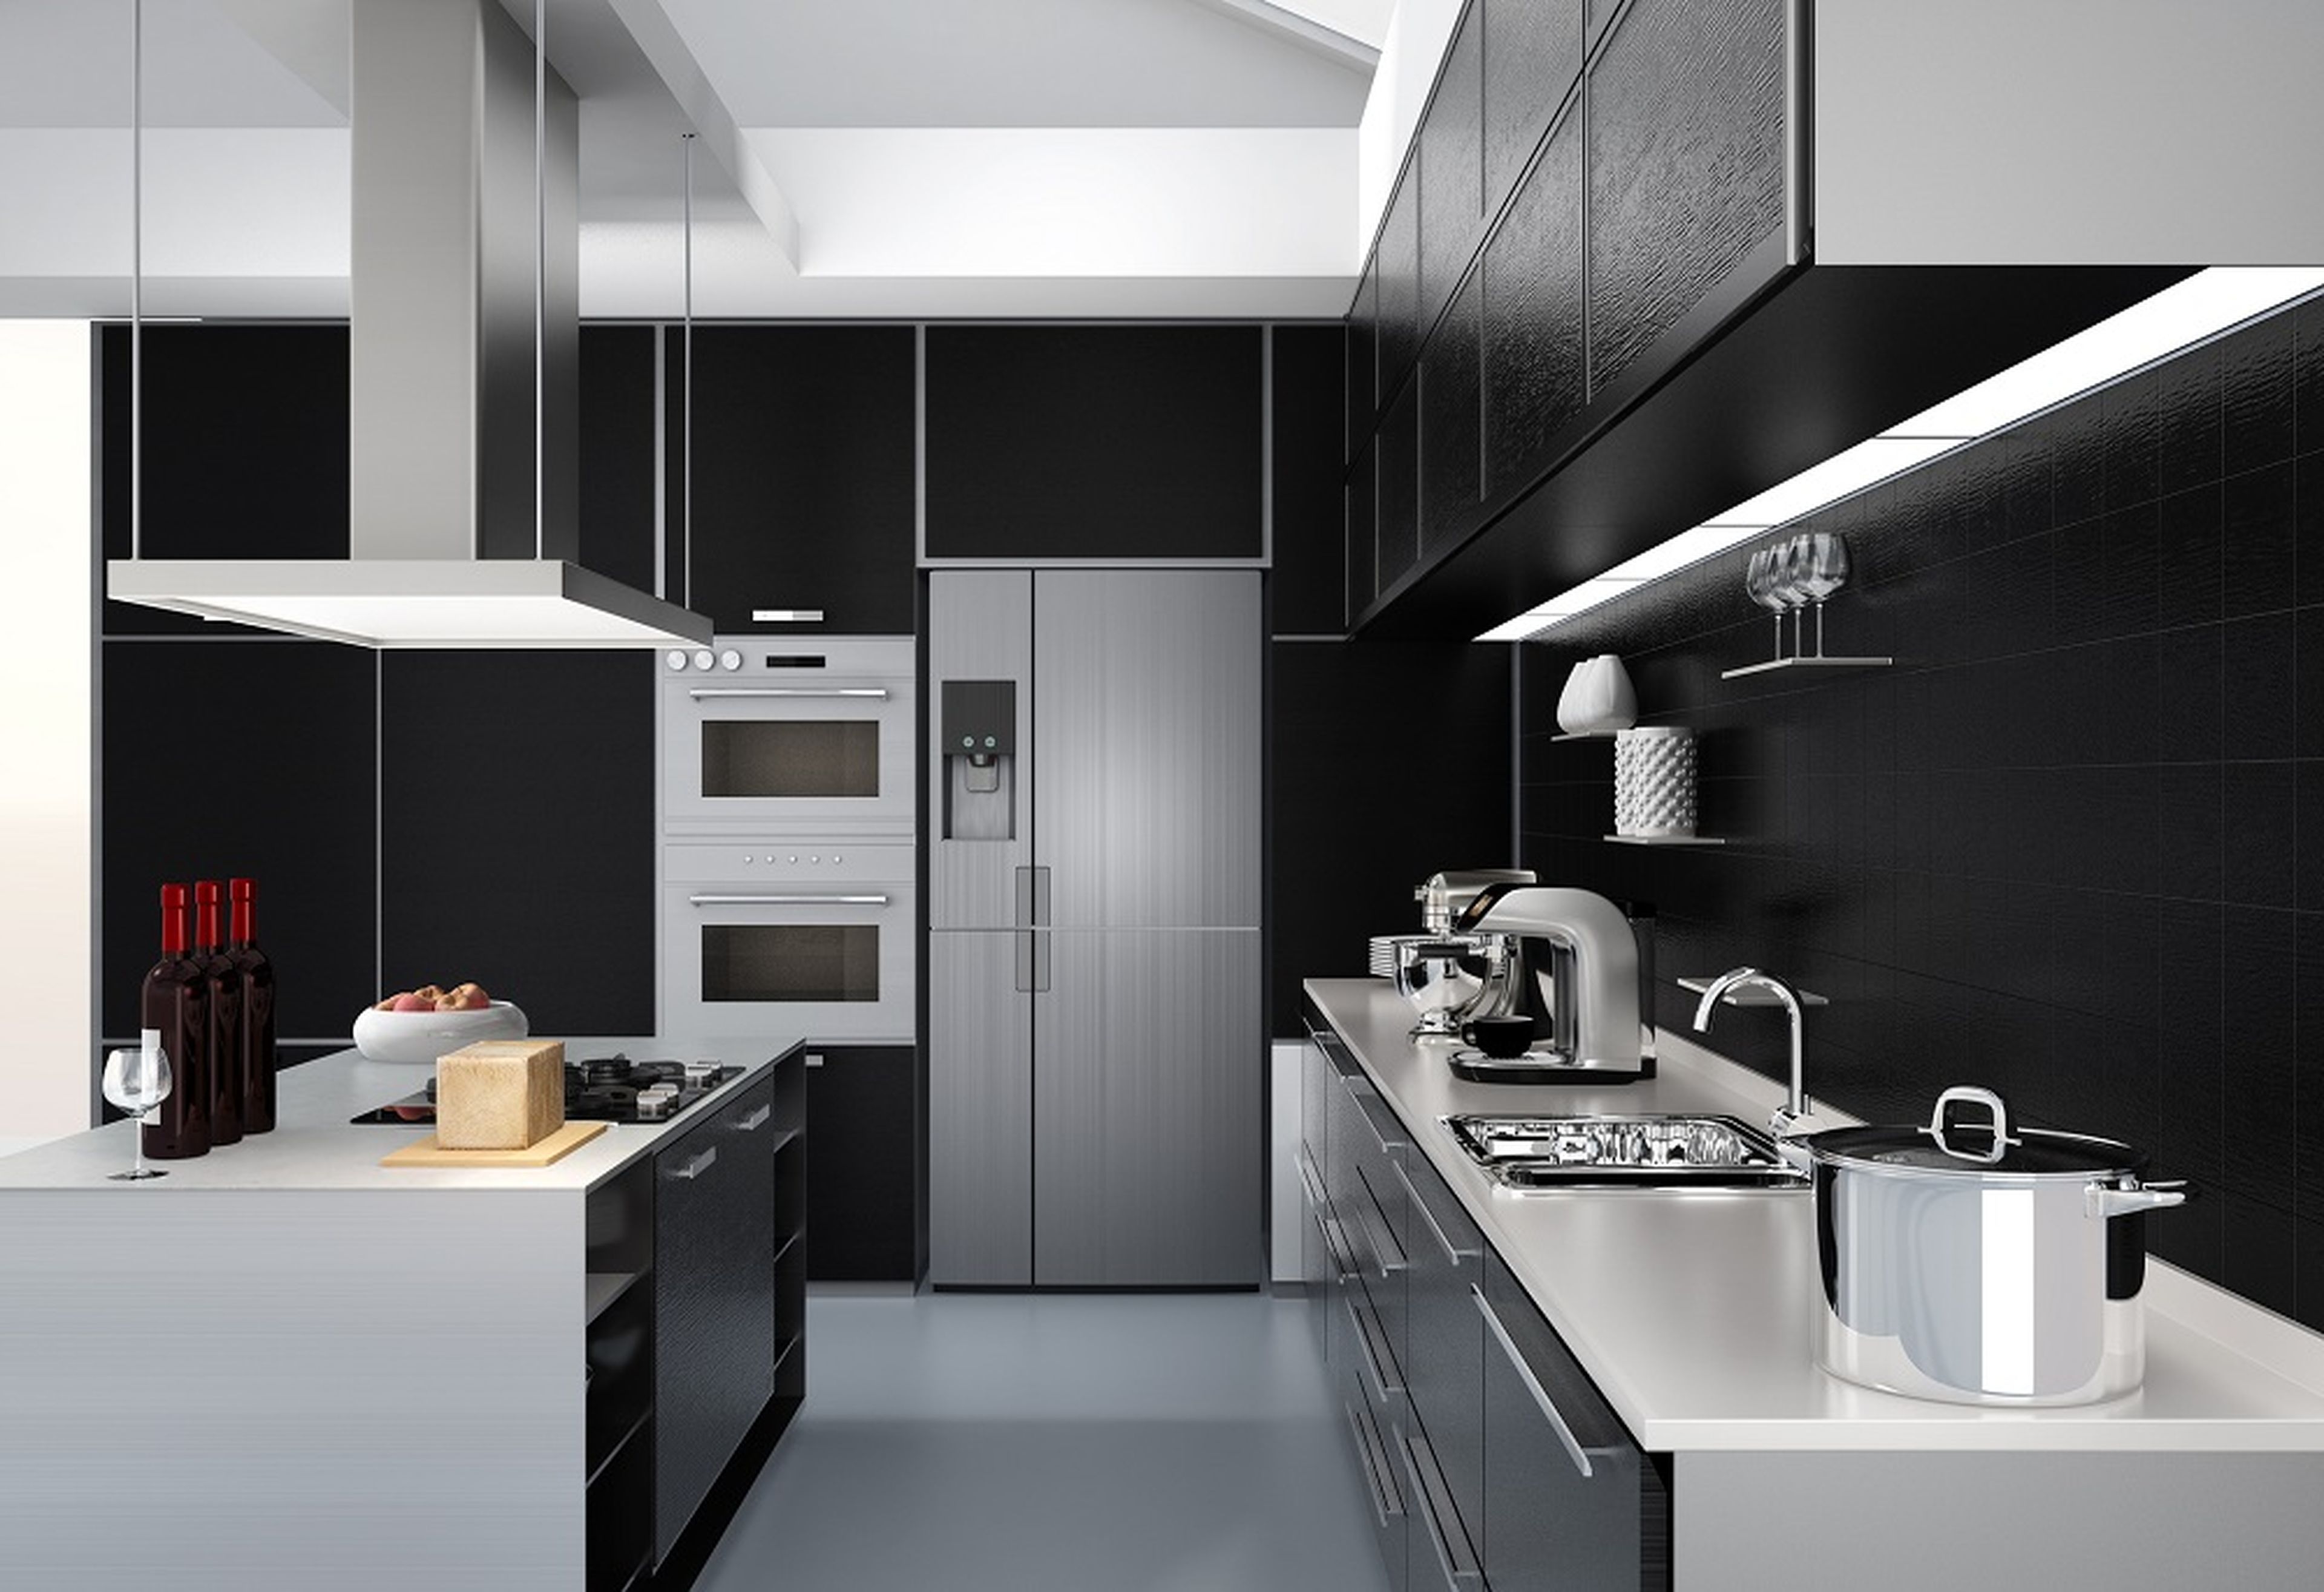 Electrodomésticos acabados en aluminio en una cocina moderna